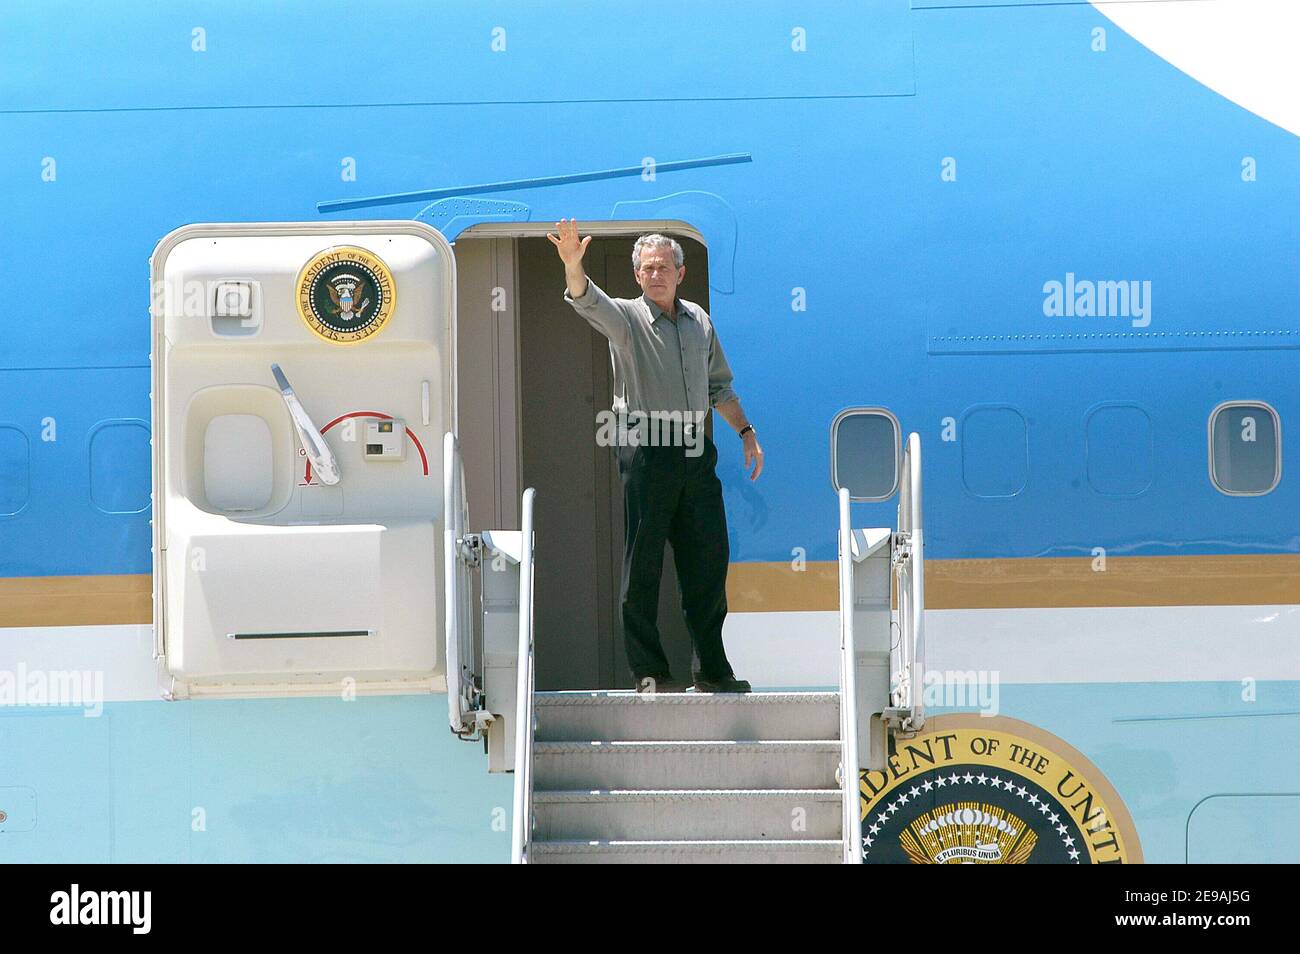 Le Président George W Bush fait passer Au revoir aux Marines et aux membres de service de la Station aérienne du corps des Marines (MCAS) Yuma, des marches de la Force aérienne One à Yuma, en Arizona, le 18 mai 2006. Le président a atterri à bord de la station aérienne en route vers la frontière américaine et mexicaine. Photo par USN via ABACAPRESS.COM Banque D'Images